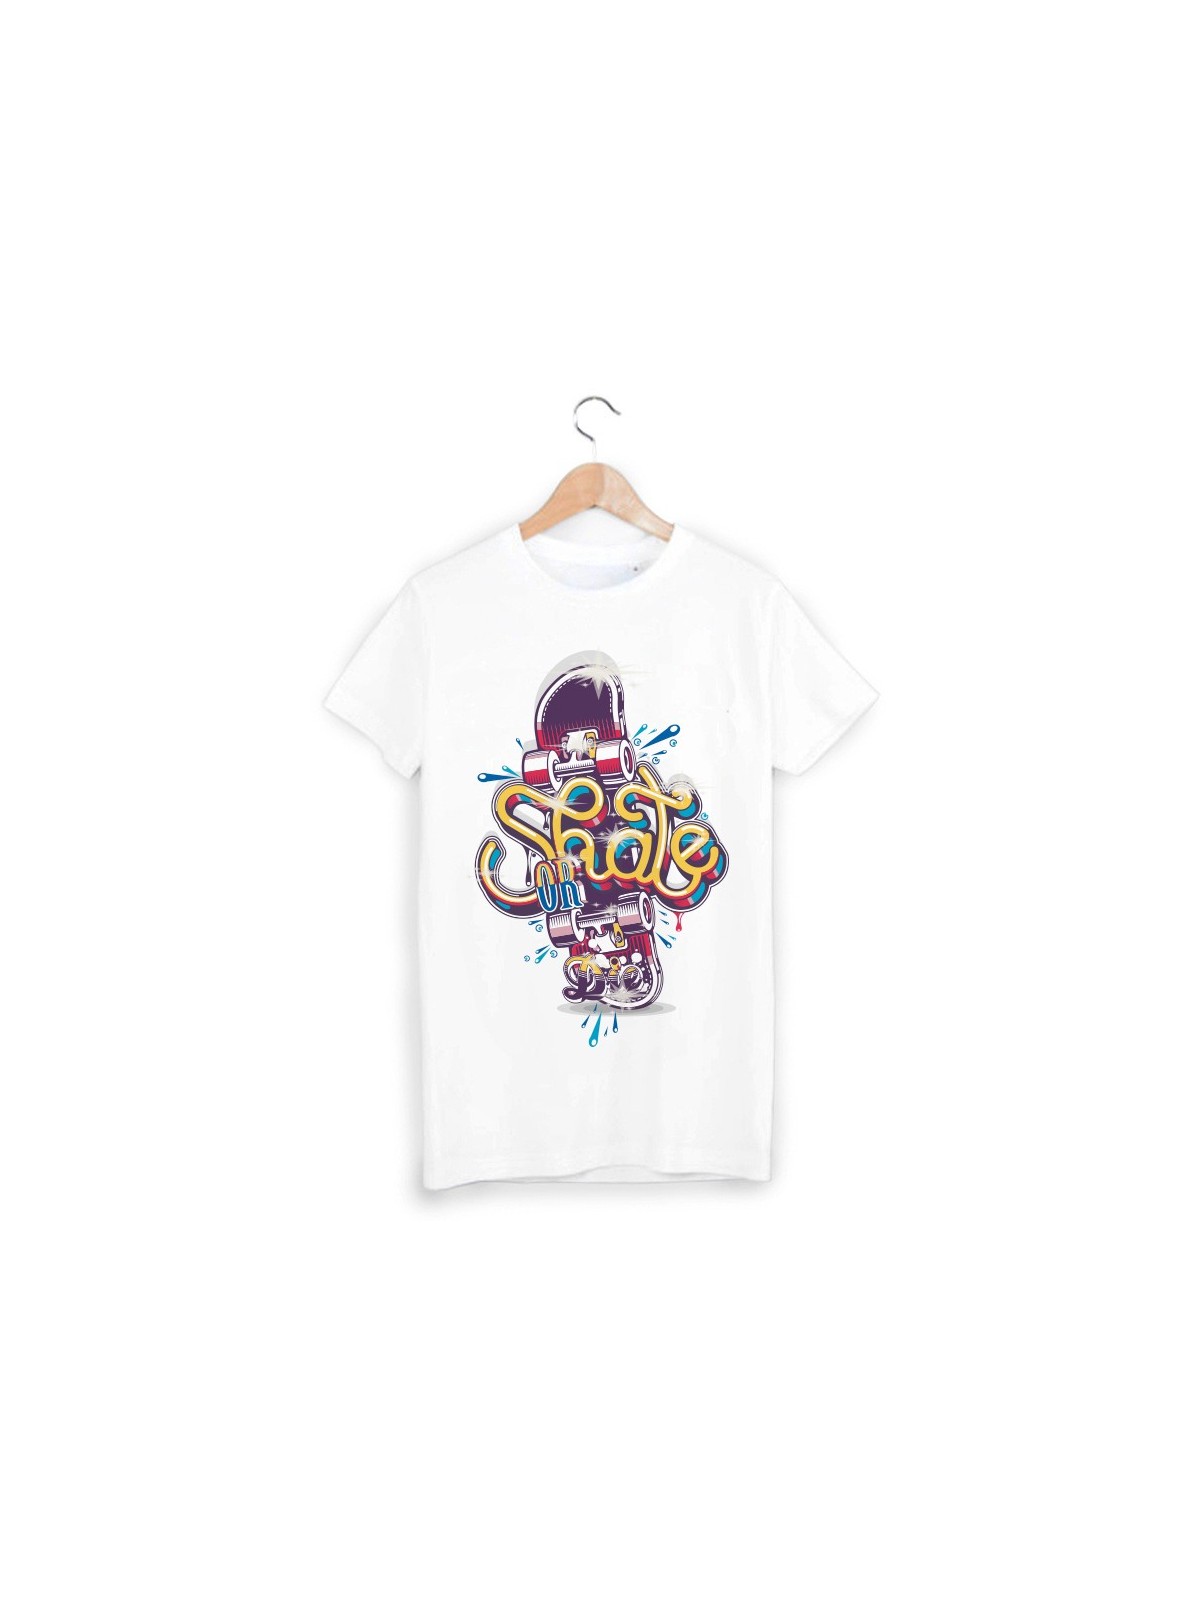 T-Shirt skate hip hop ref 1014